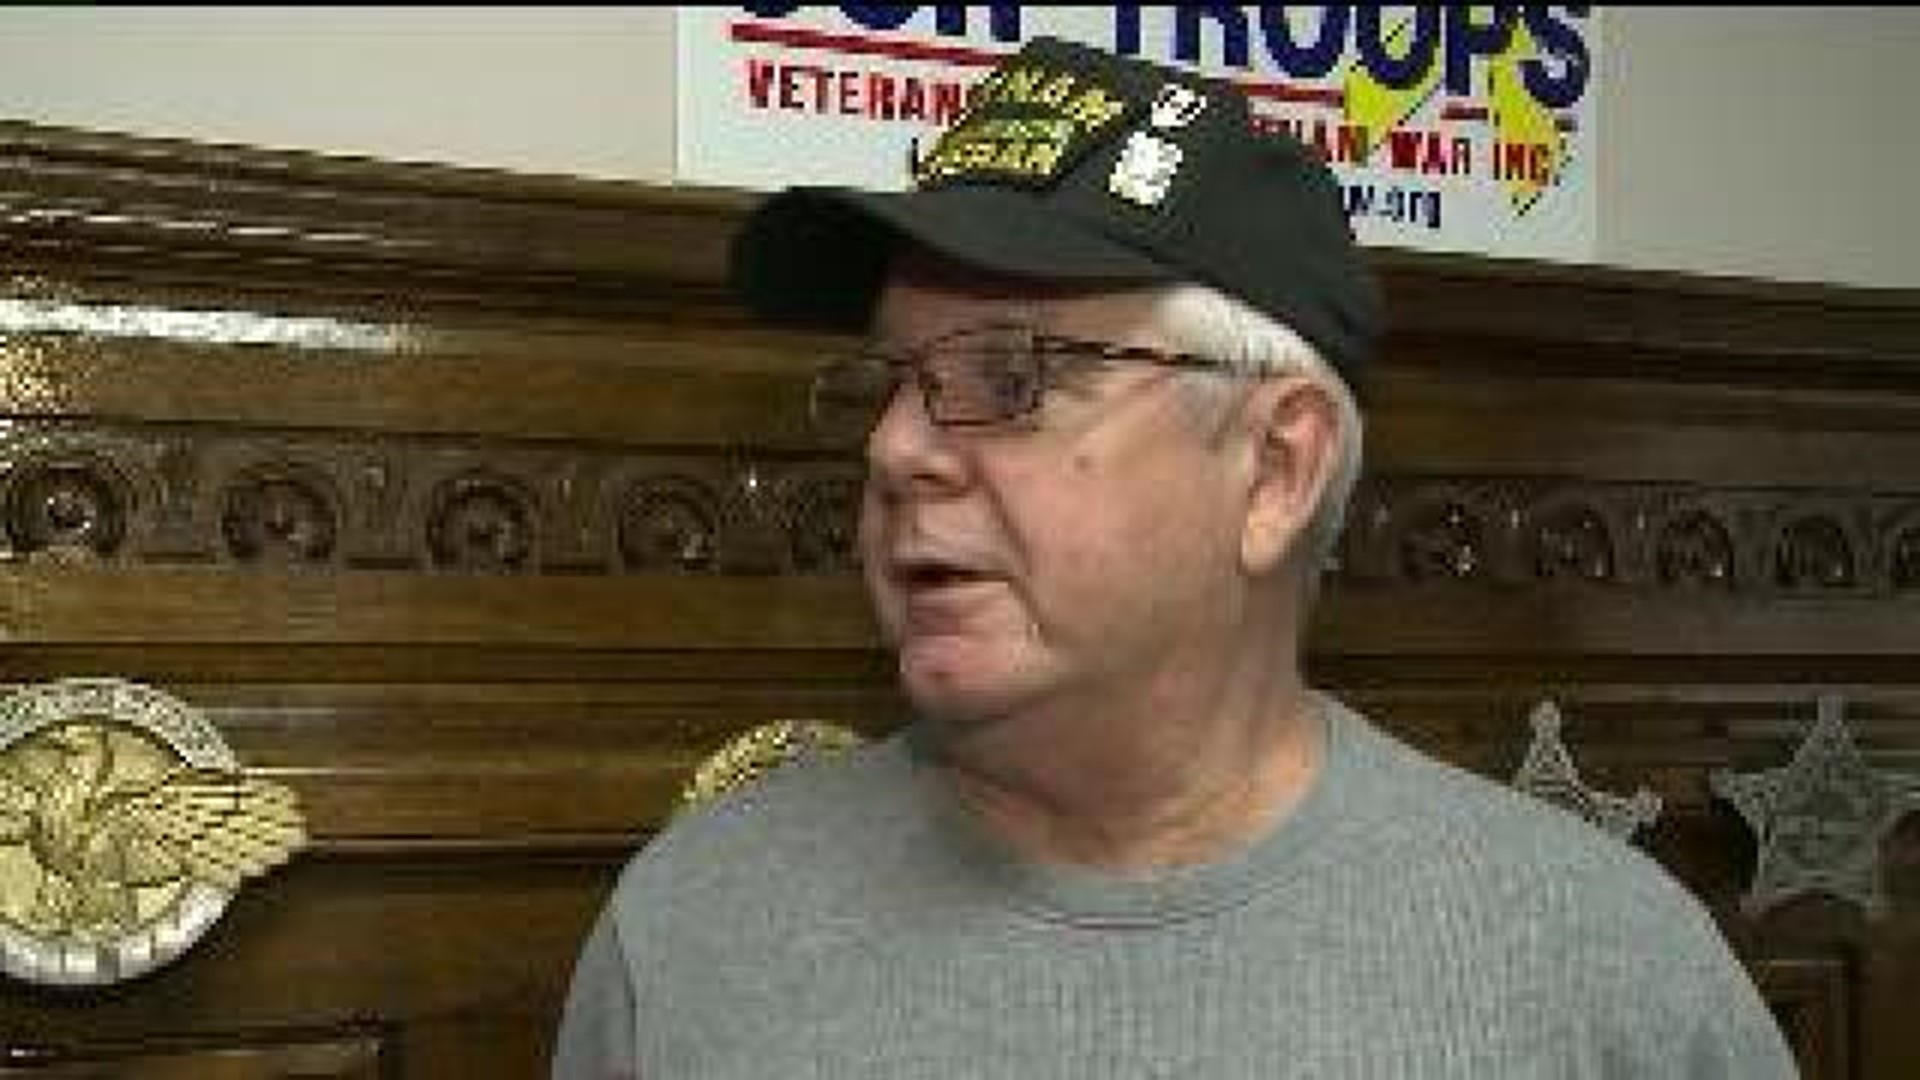 Veterans Critical of Congress